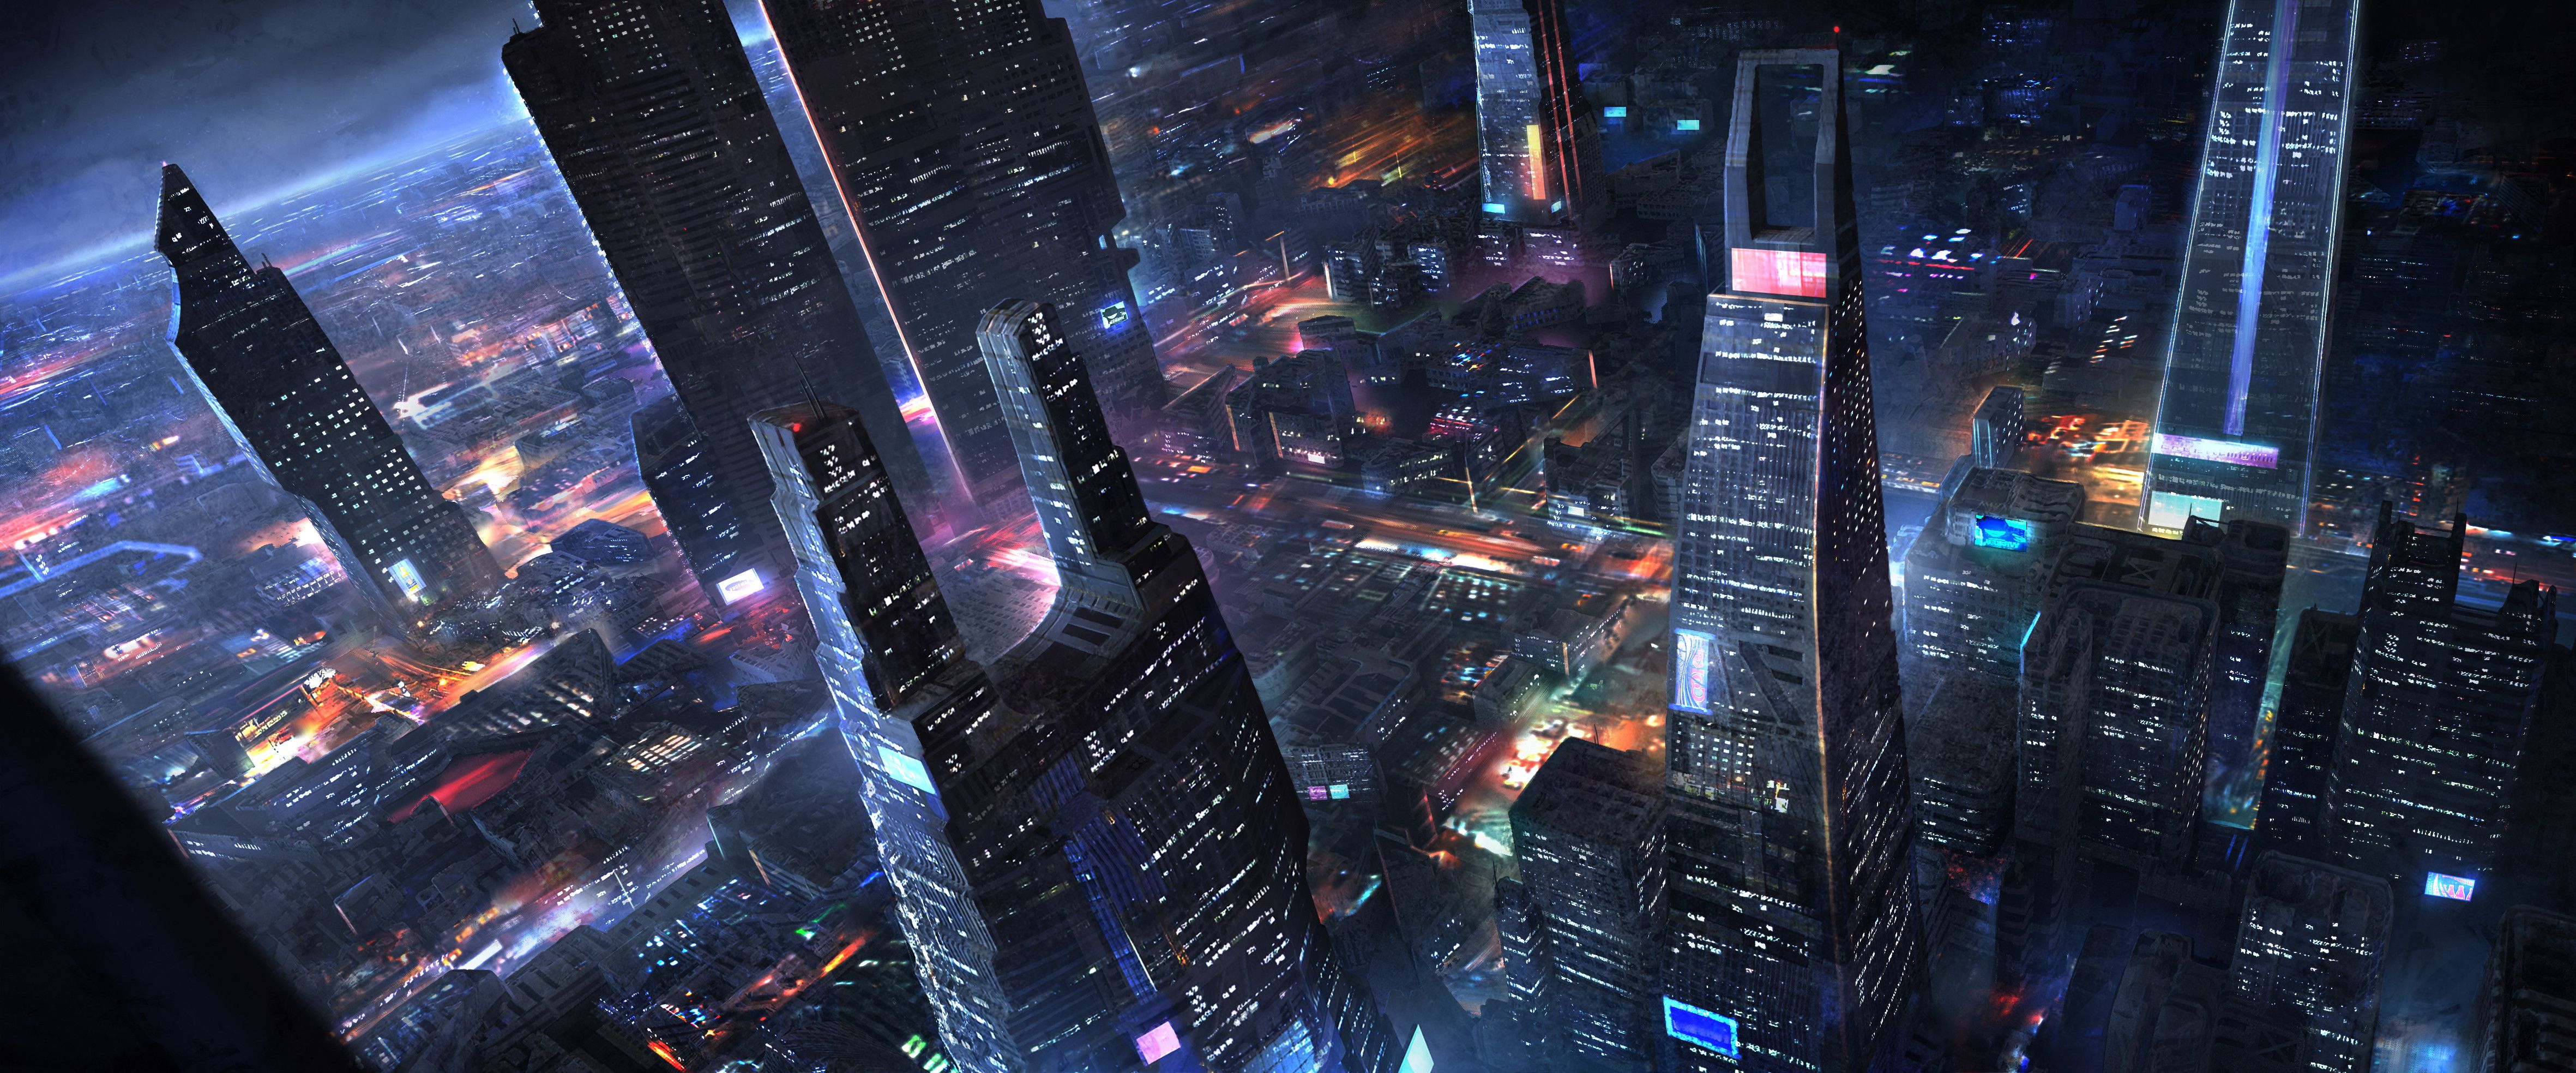 Sci Fi Cities Wallpaper Dump, Part 2